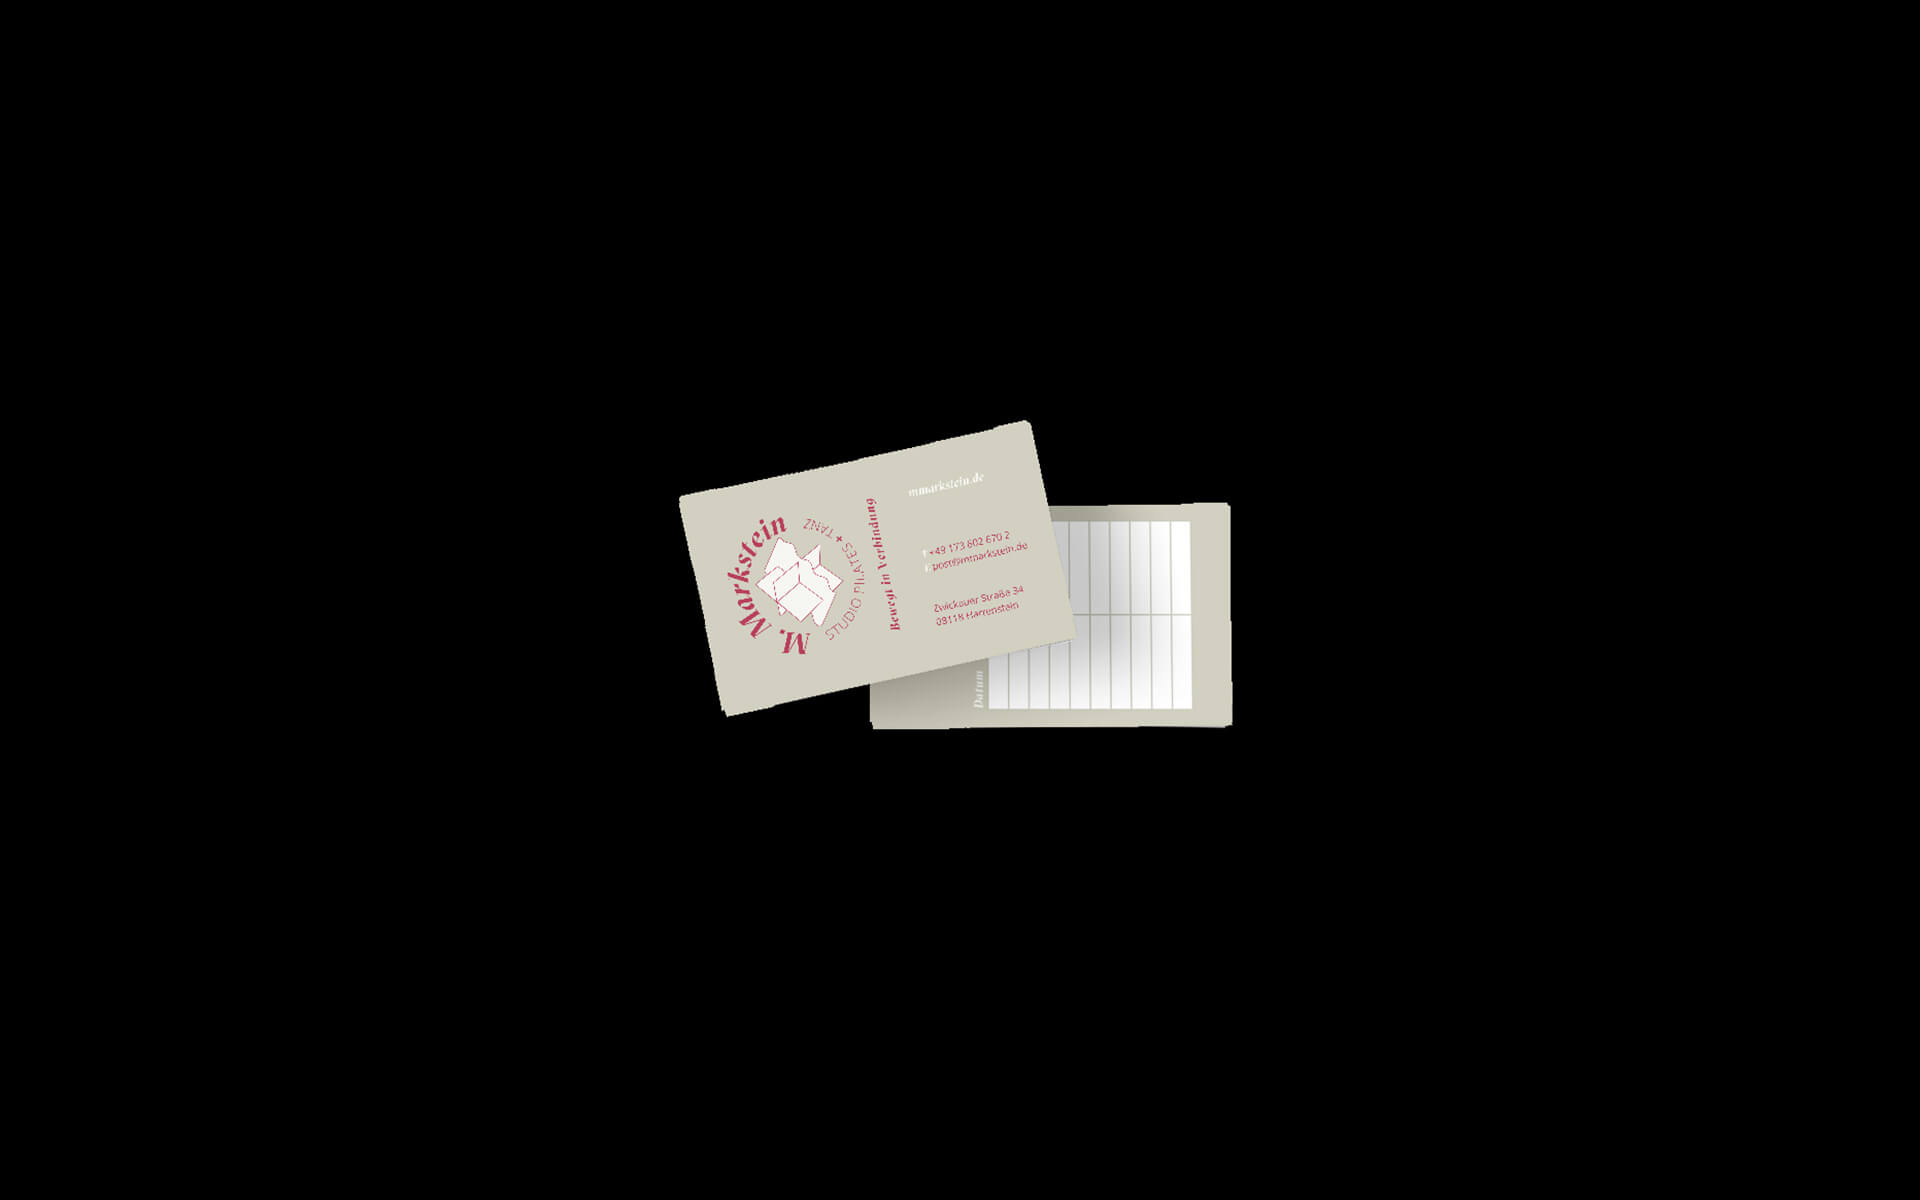 Denken & Handeln Fine Heininger MMarkstein CI Visuelle Identität Logo Geschäftsausstattung Briefpapier Visitenkarte Webseite Flyer